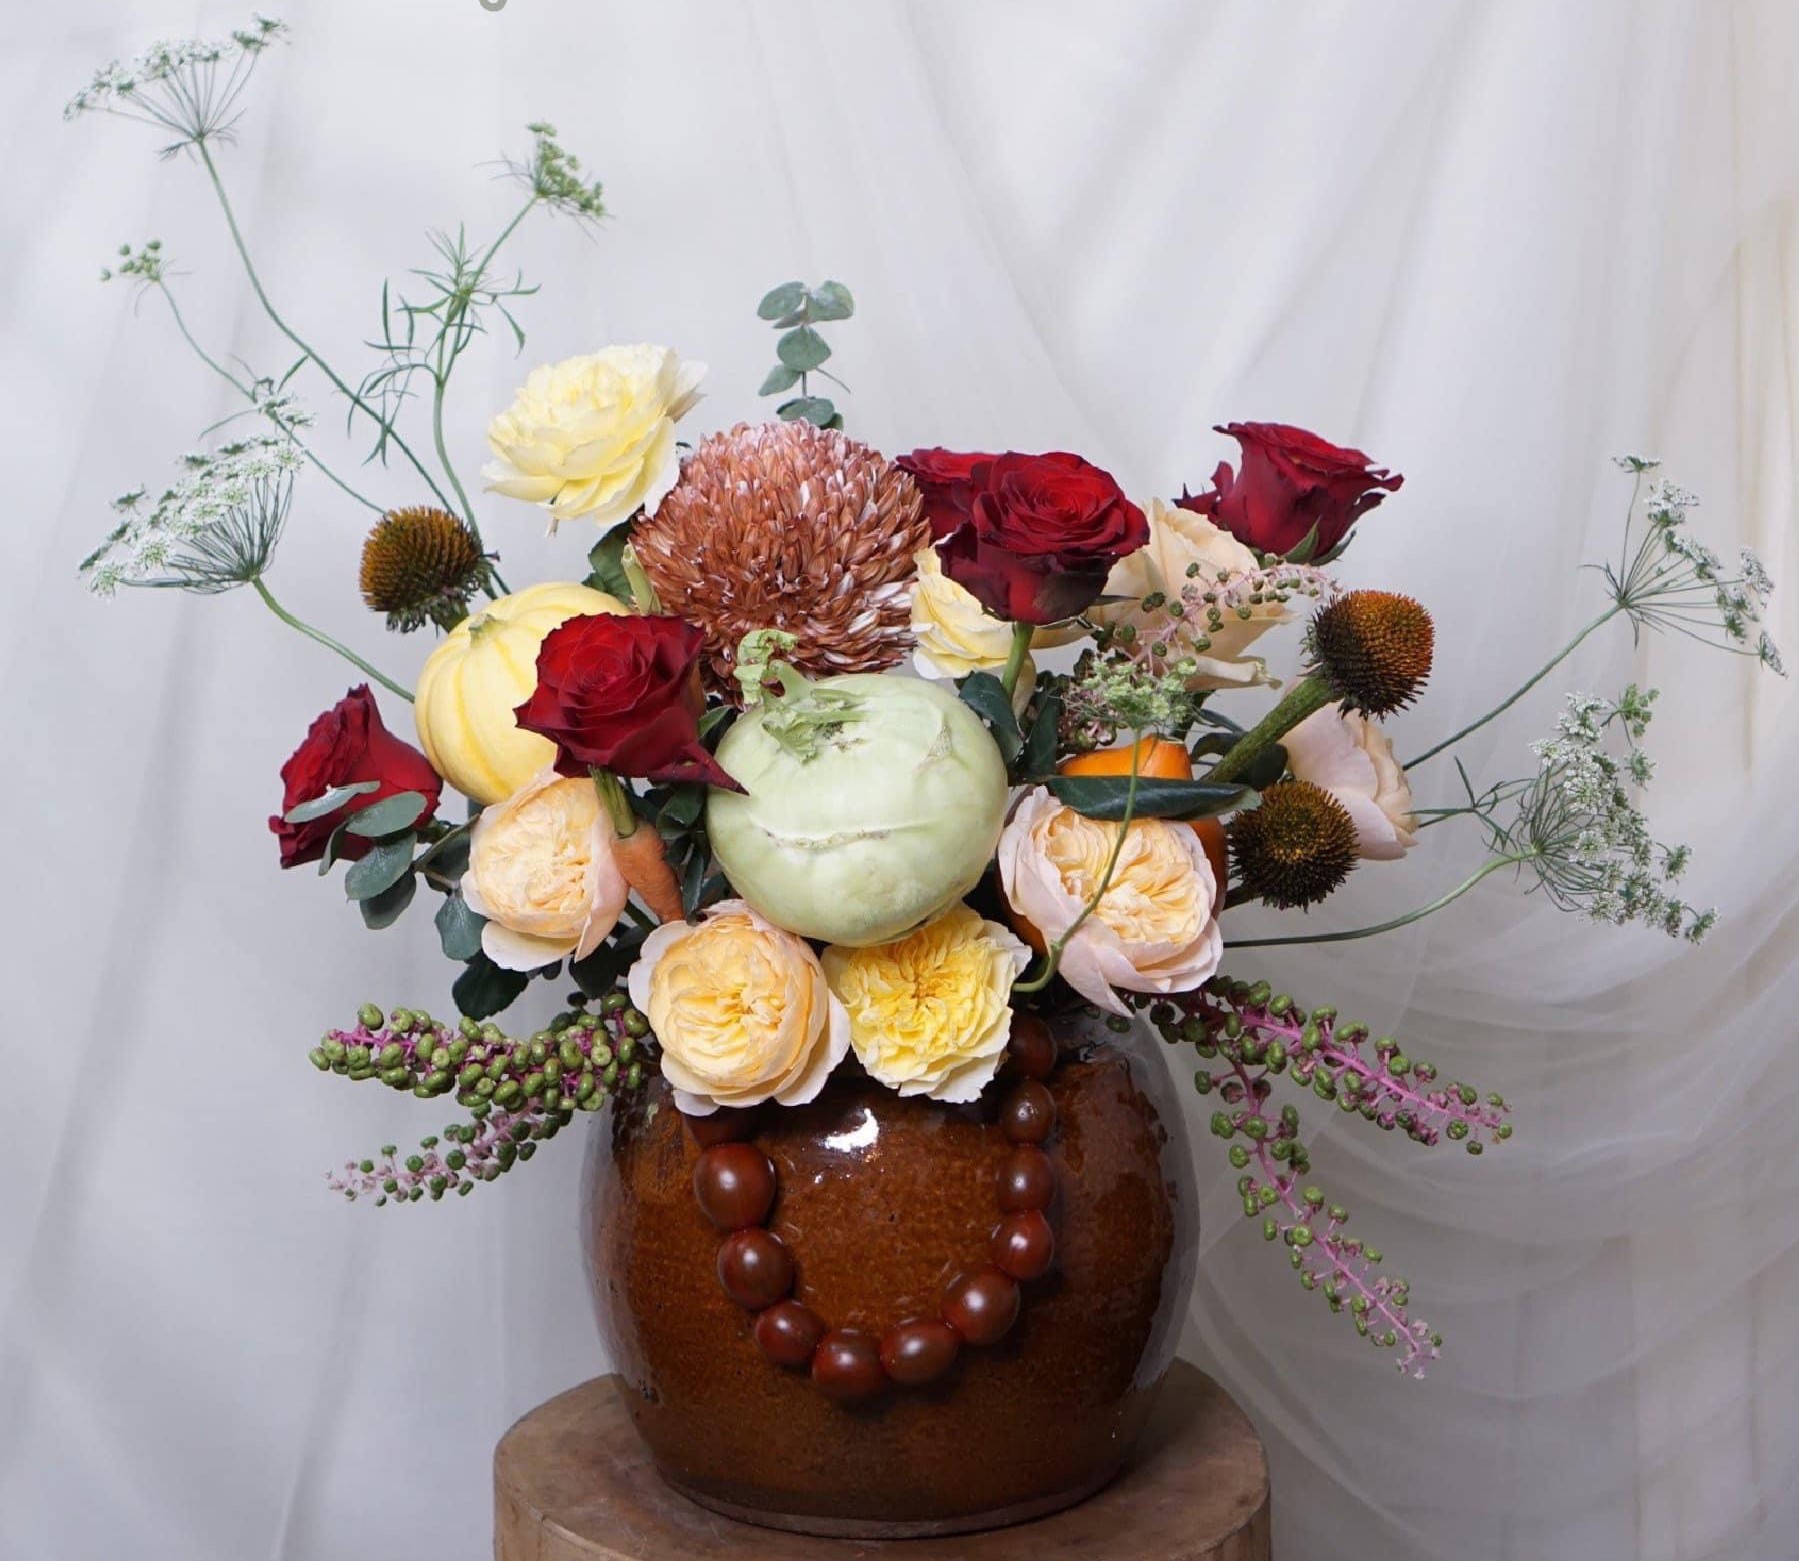 Khám phá bó hoa rau củ đầy màu sắc và tinh tế trên hình ảnh này! Bạn sẽ không tin được những bông hoa độc đáo được tạo ra từ rau củ sẽ làm cho bất cứ ai nhìn vào đều thích thú. Đây là món quà nhỏ xinh tươi tắn để tặng cho bạn bè, gia đình hoặc đem đi trang trí cho một sự kiện đặc biệt.